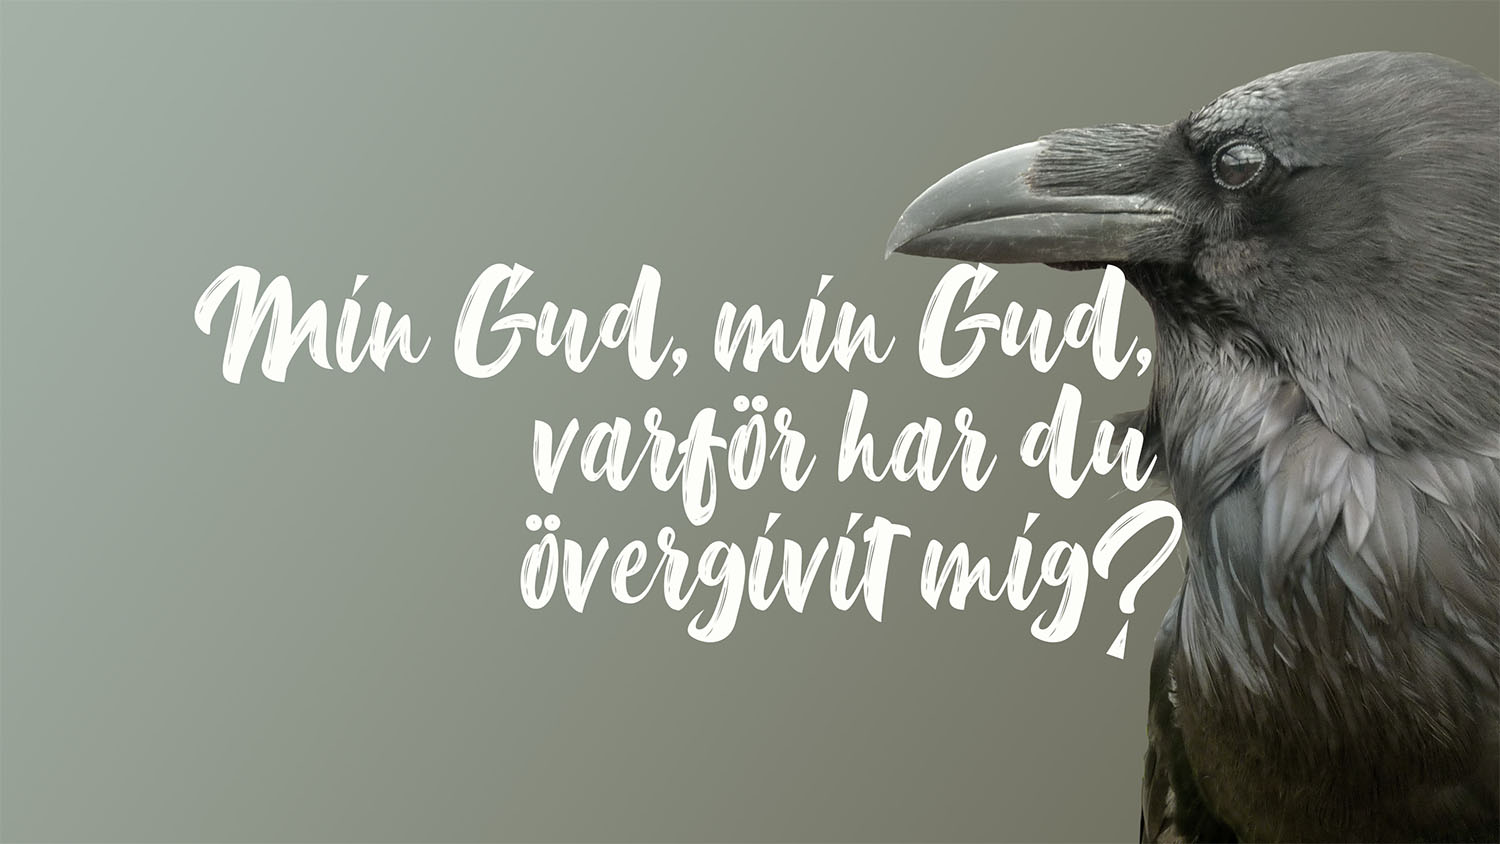 En korp mot grå bakgrund och texten ”Min Gud, min Gud, varför har du övergivit mig?”.